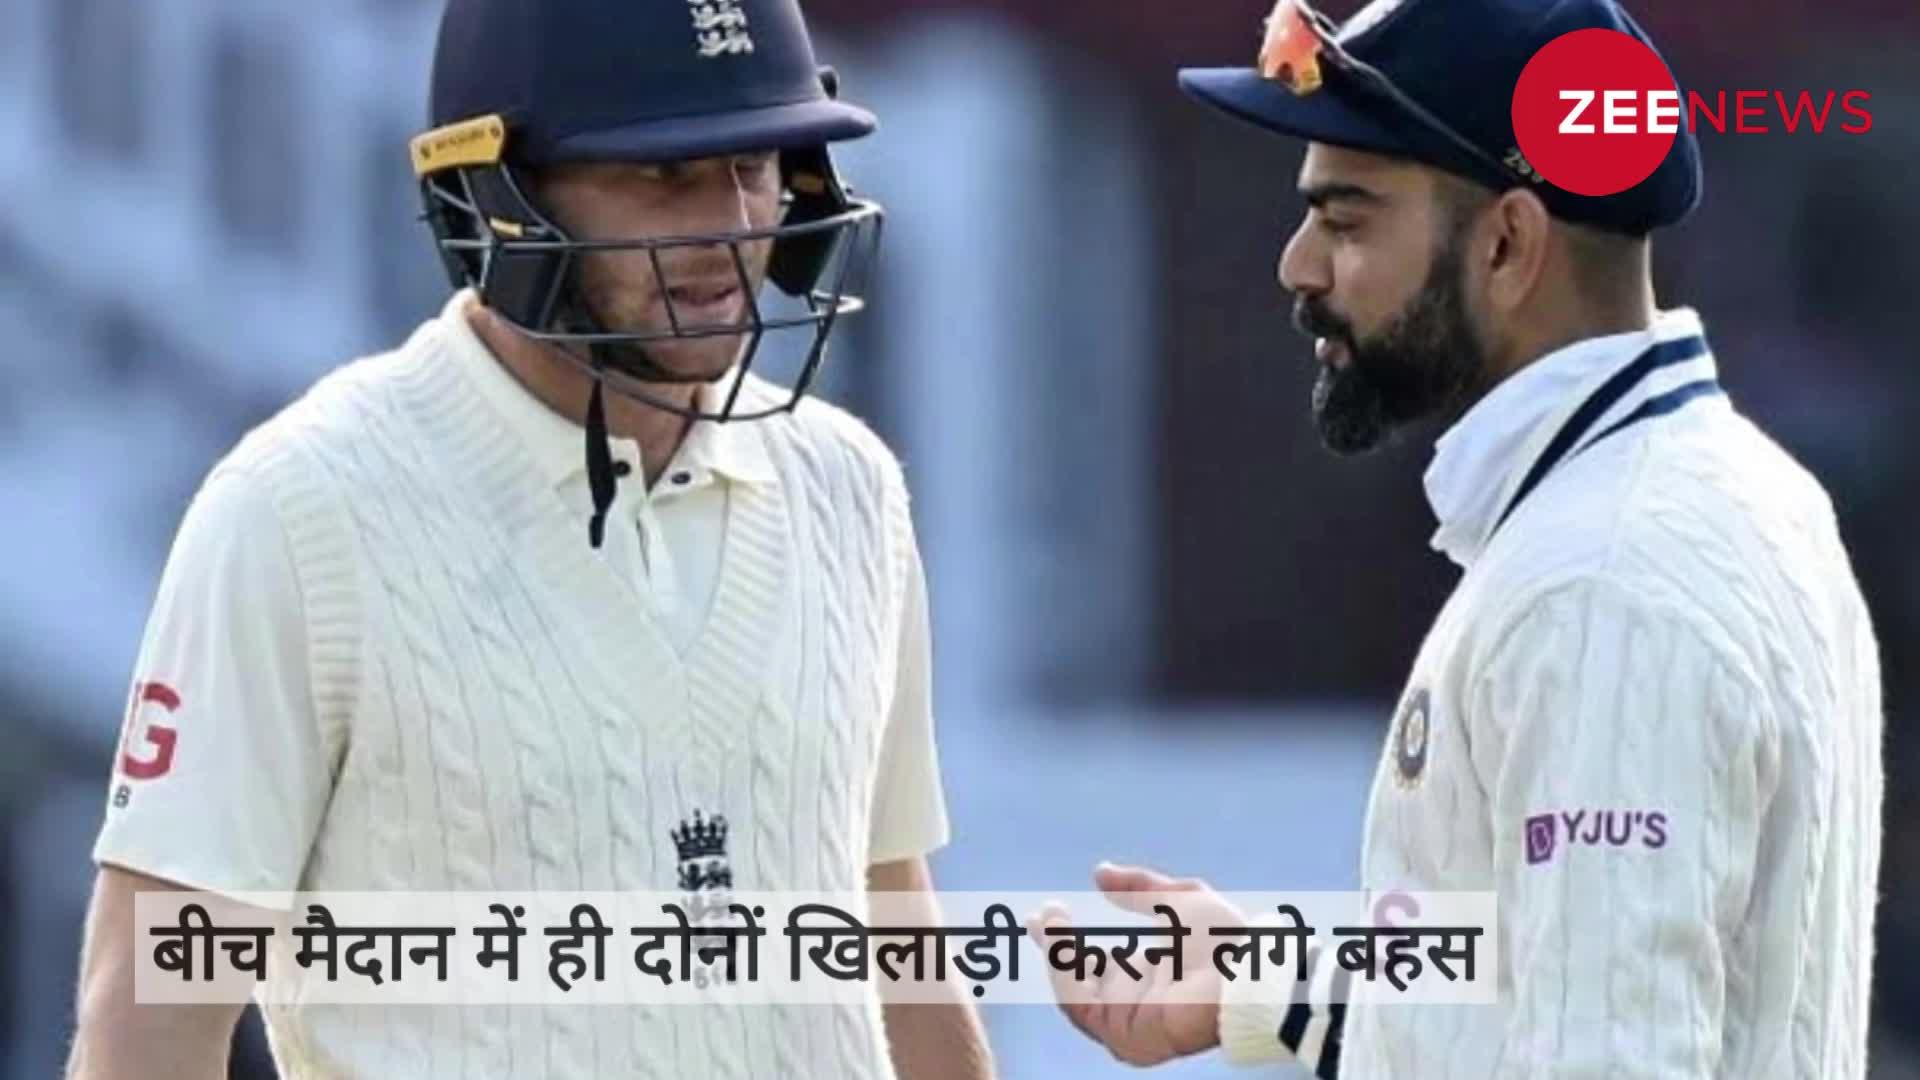 England vs India 5th Test: विराट कोहली और जॉनी बेयरस्टो के बीच हुआ झगड़ा